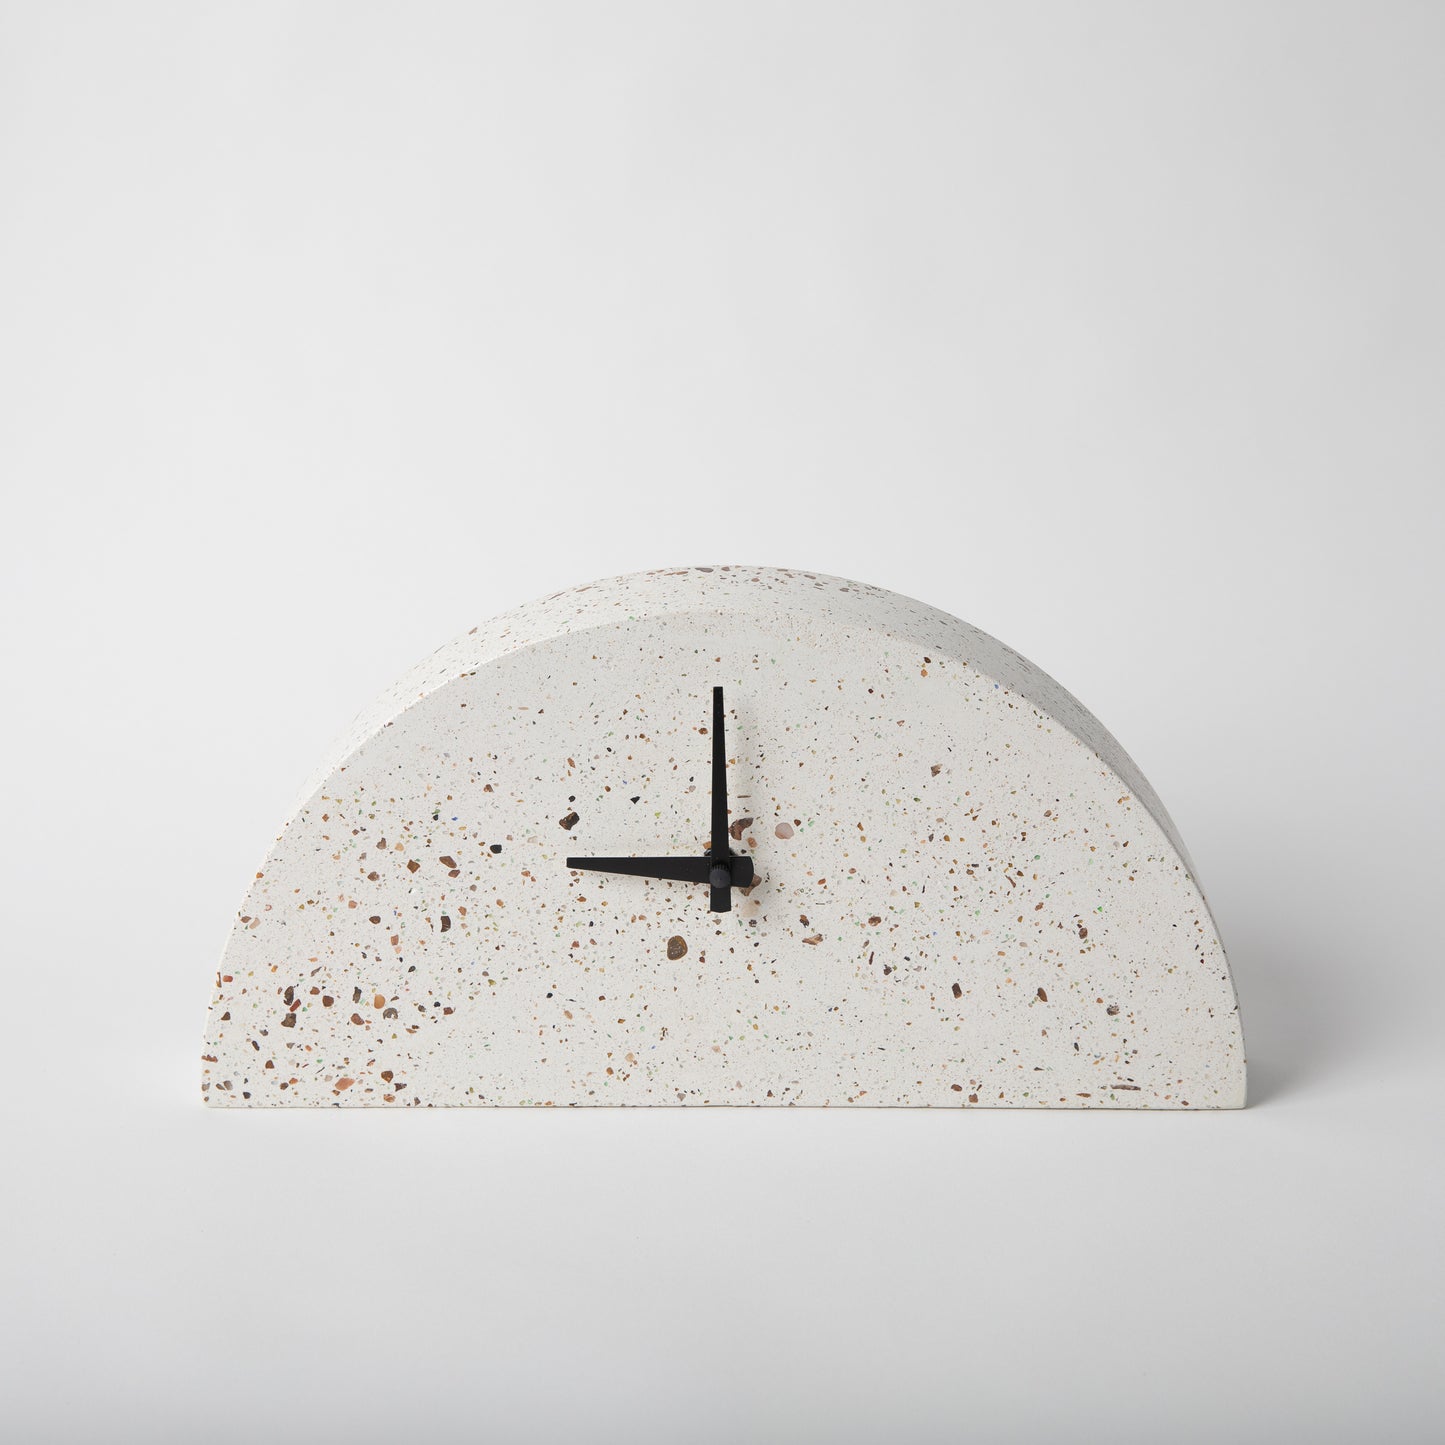 Terrazzo concrete clock in half moon shape in white.